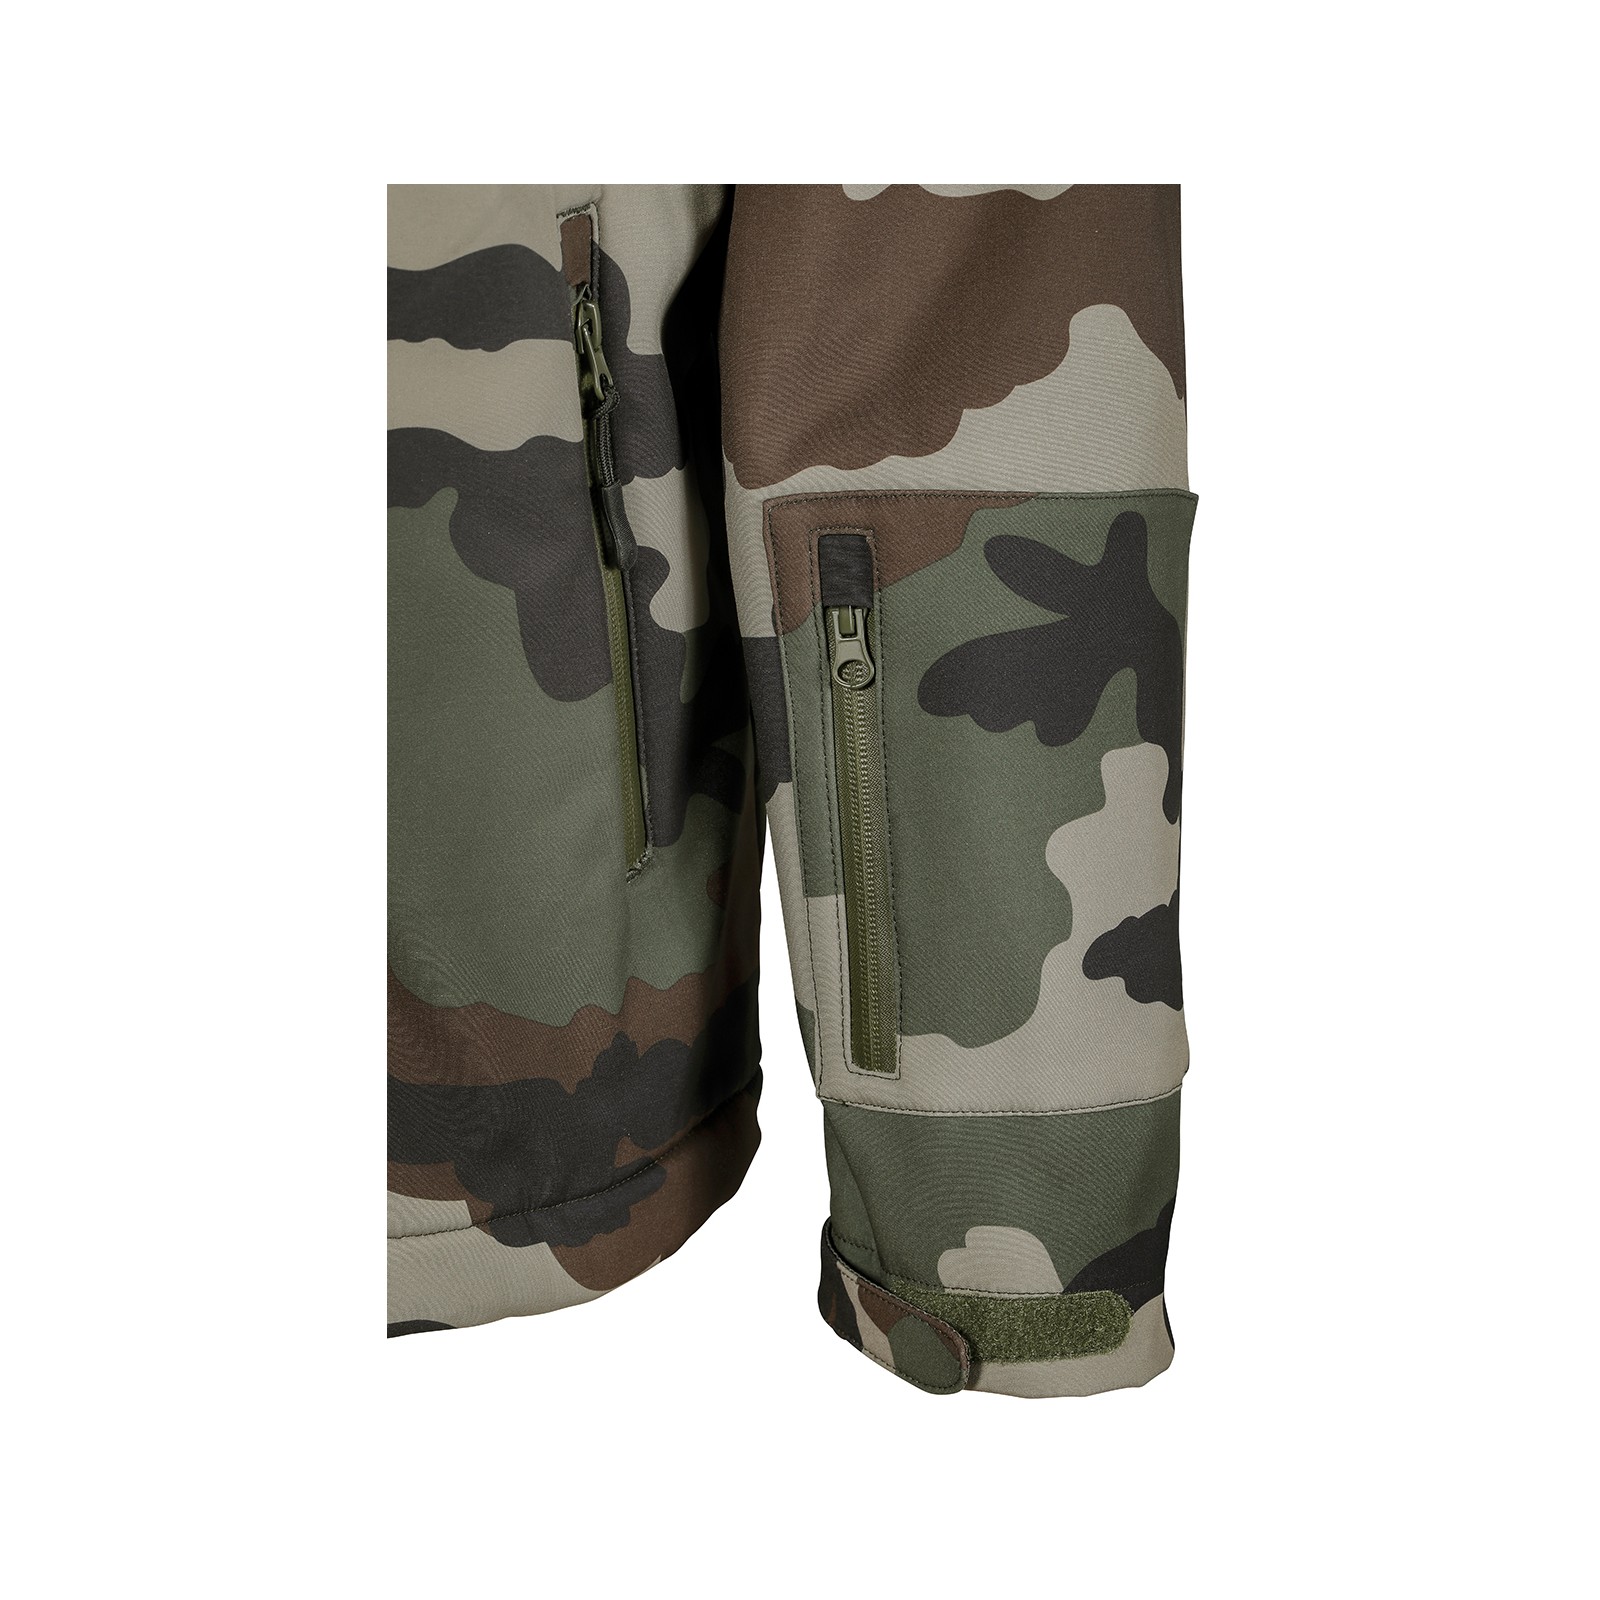 Habimat - Veste Militaire Camouflage | Softshell, CE